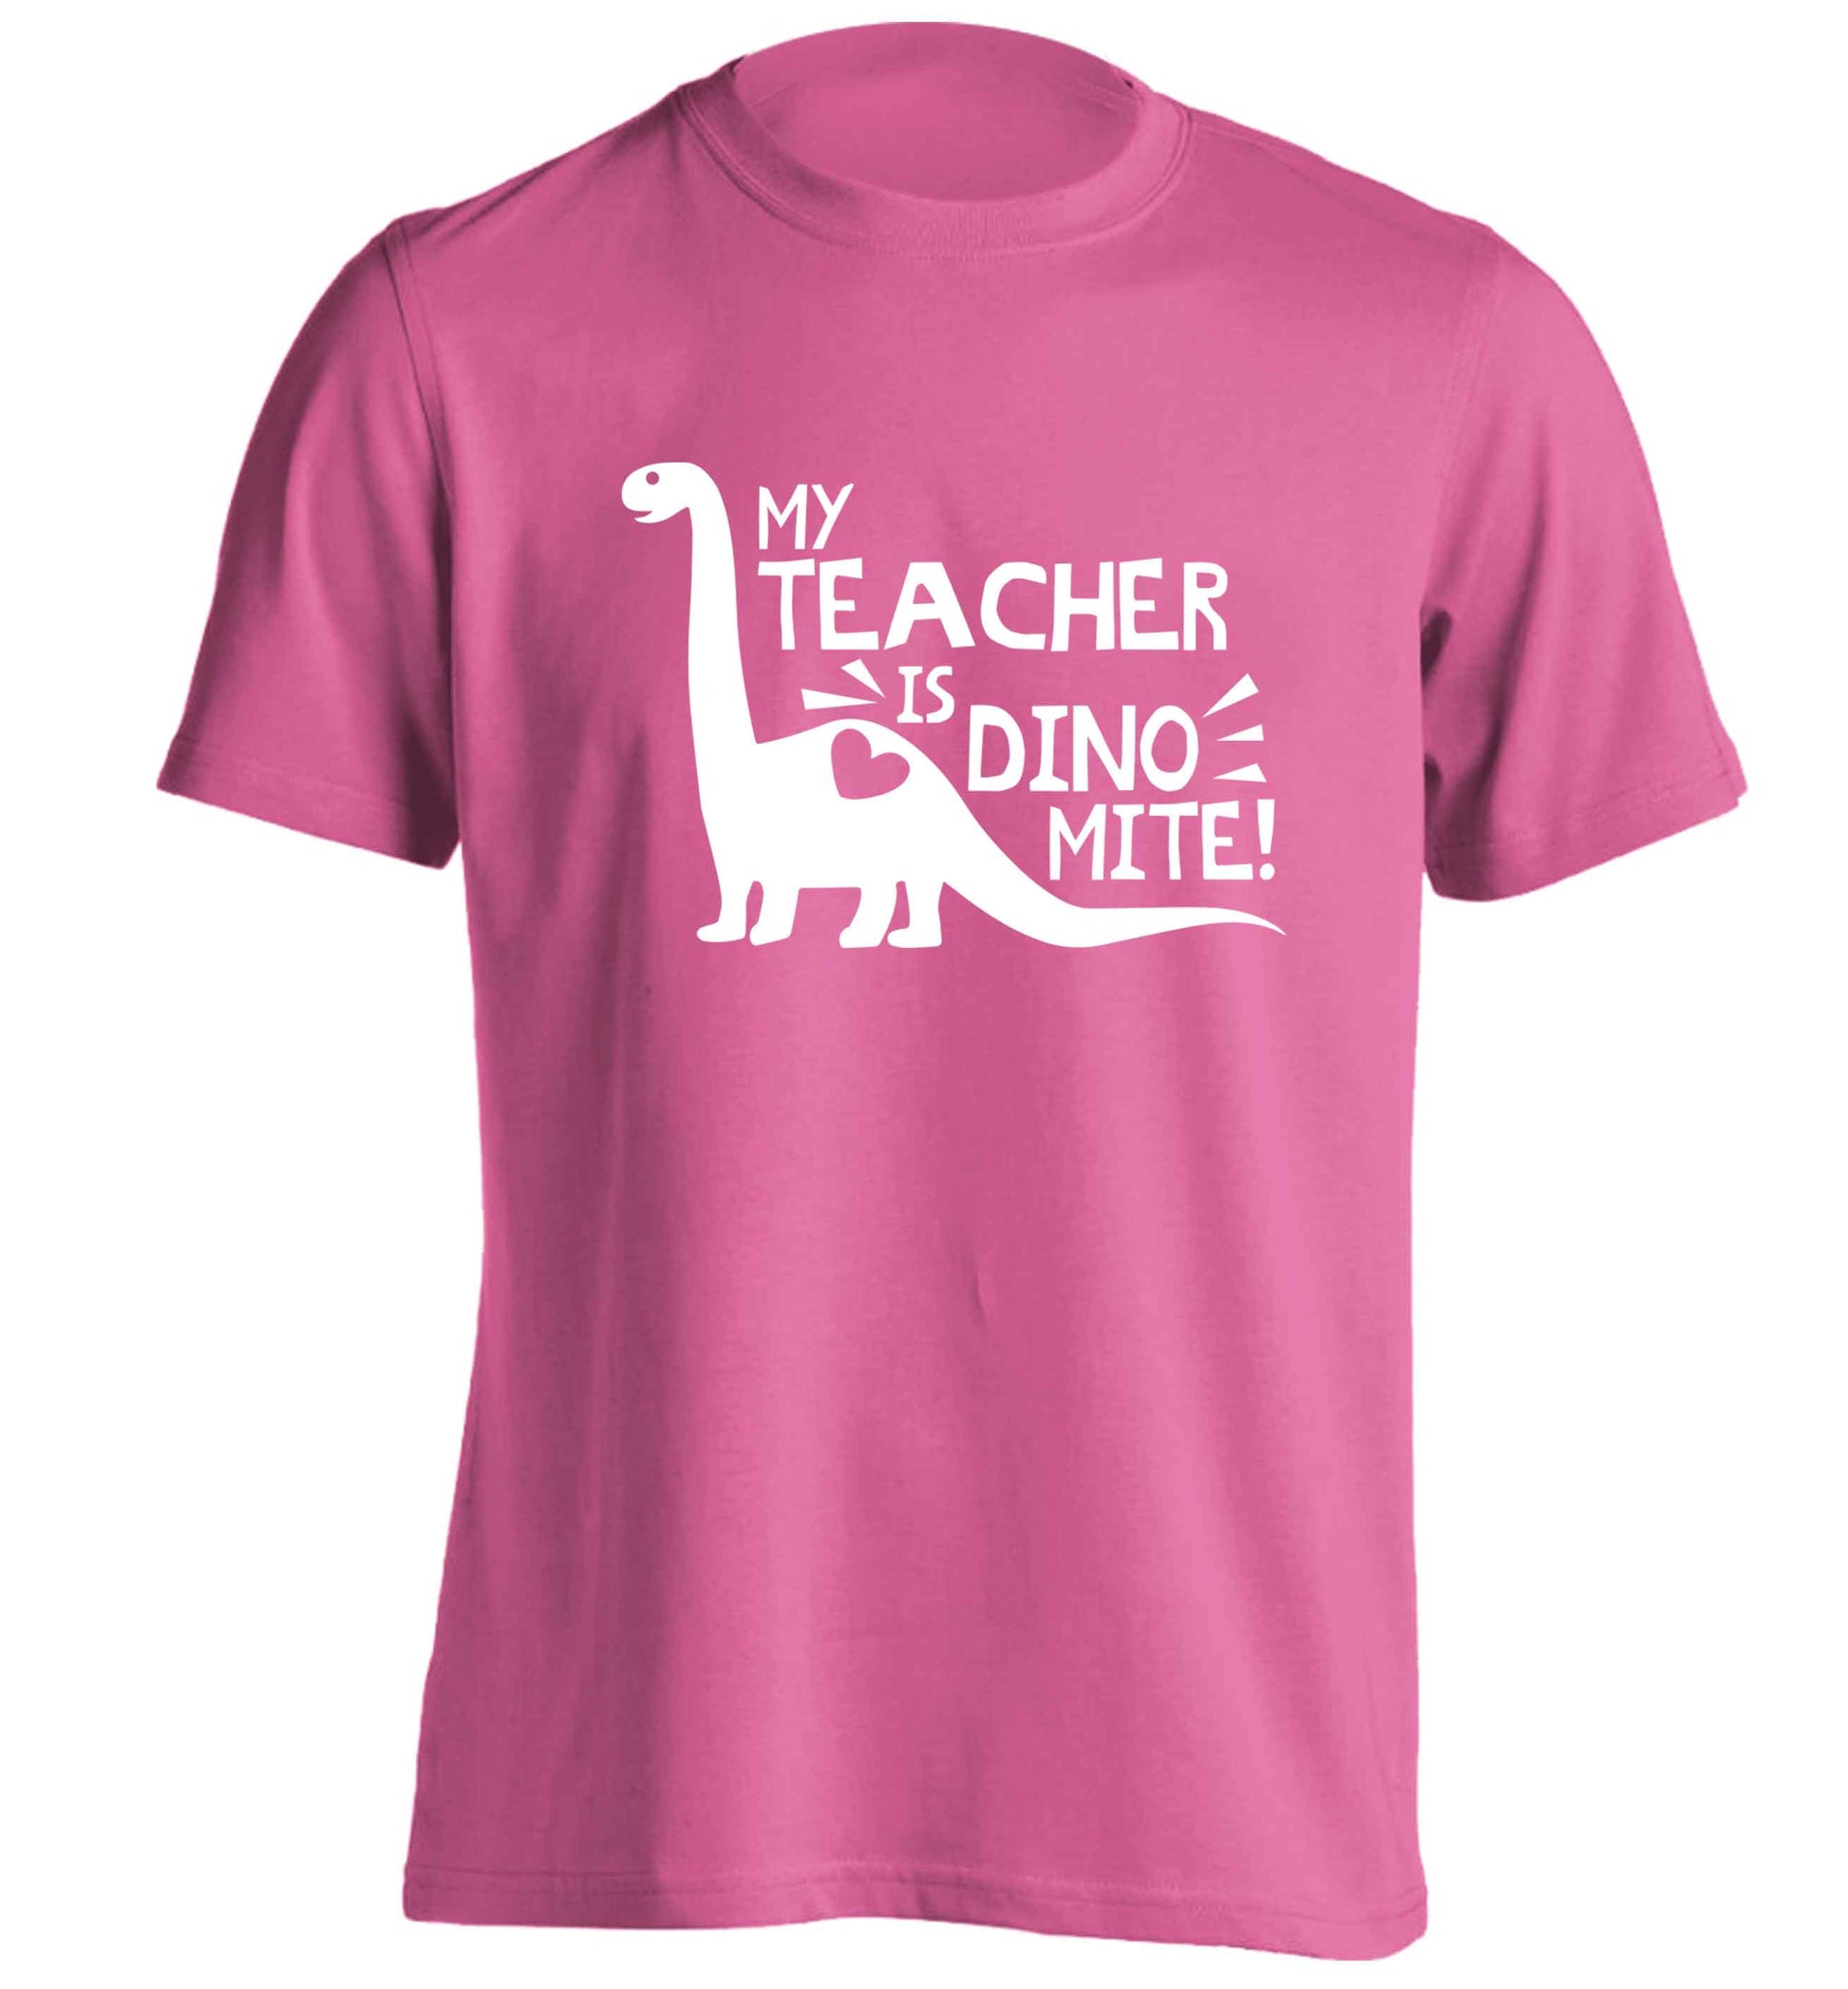 My teacher is dinomite! adults unisex pink Tshirt 2XL